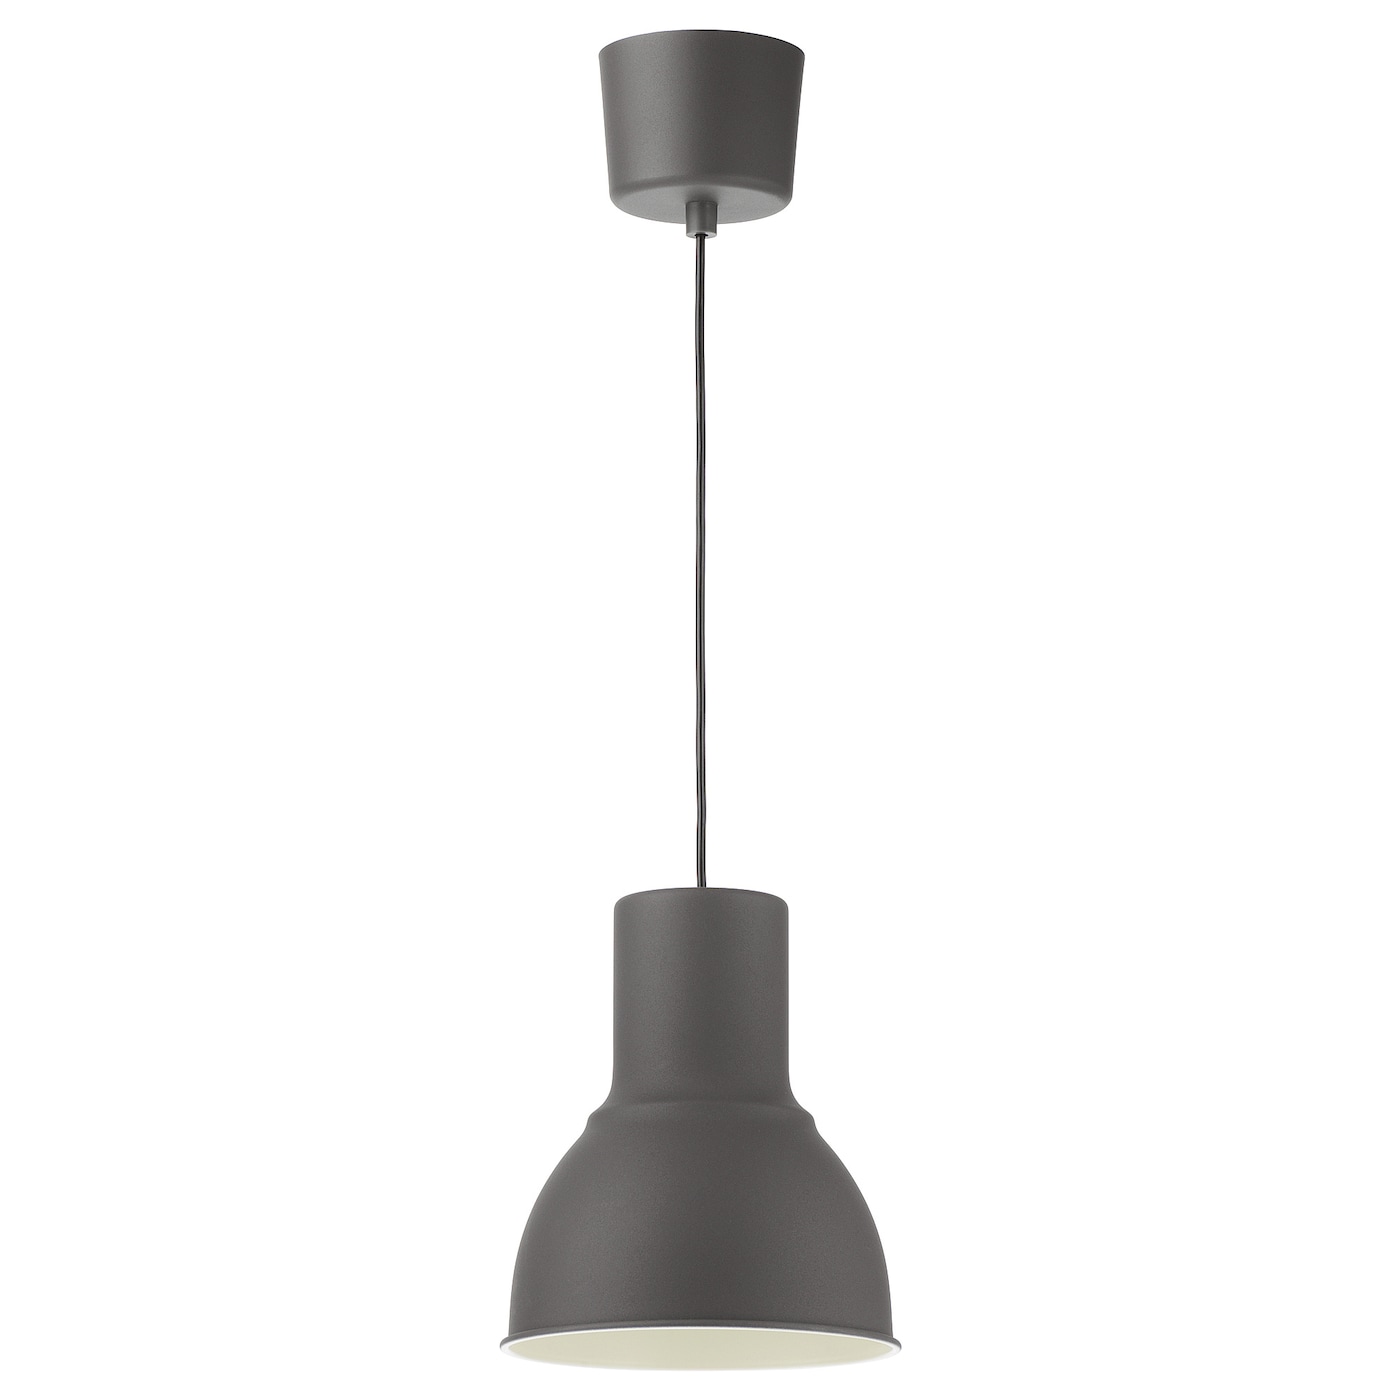 подвесной светильник ikea hektar 22 см темно серый HEKTAR ХЕКТАР Подвесной светильник, темно-серый, 22 см IKEA